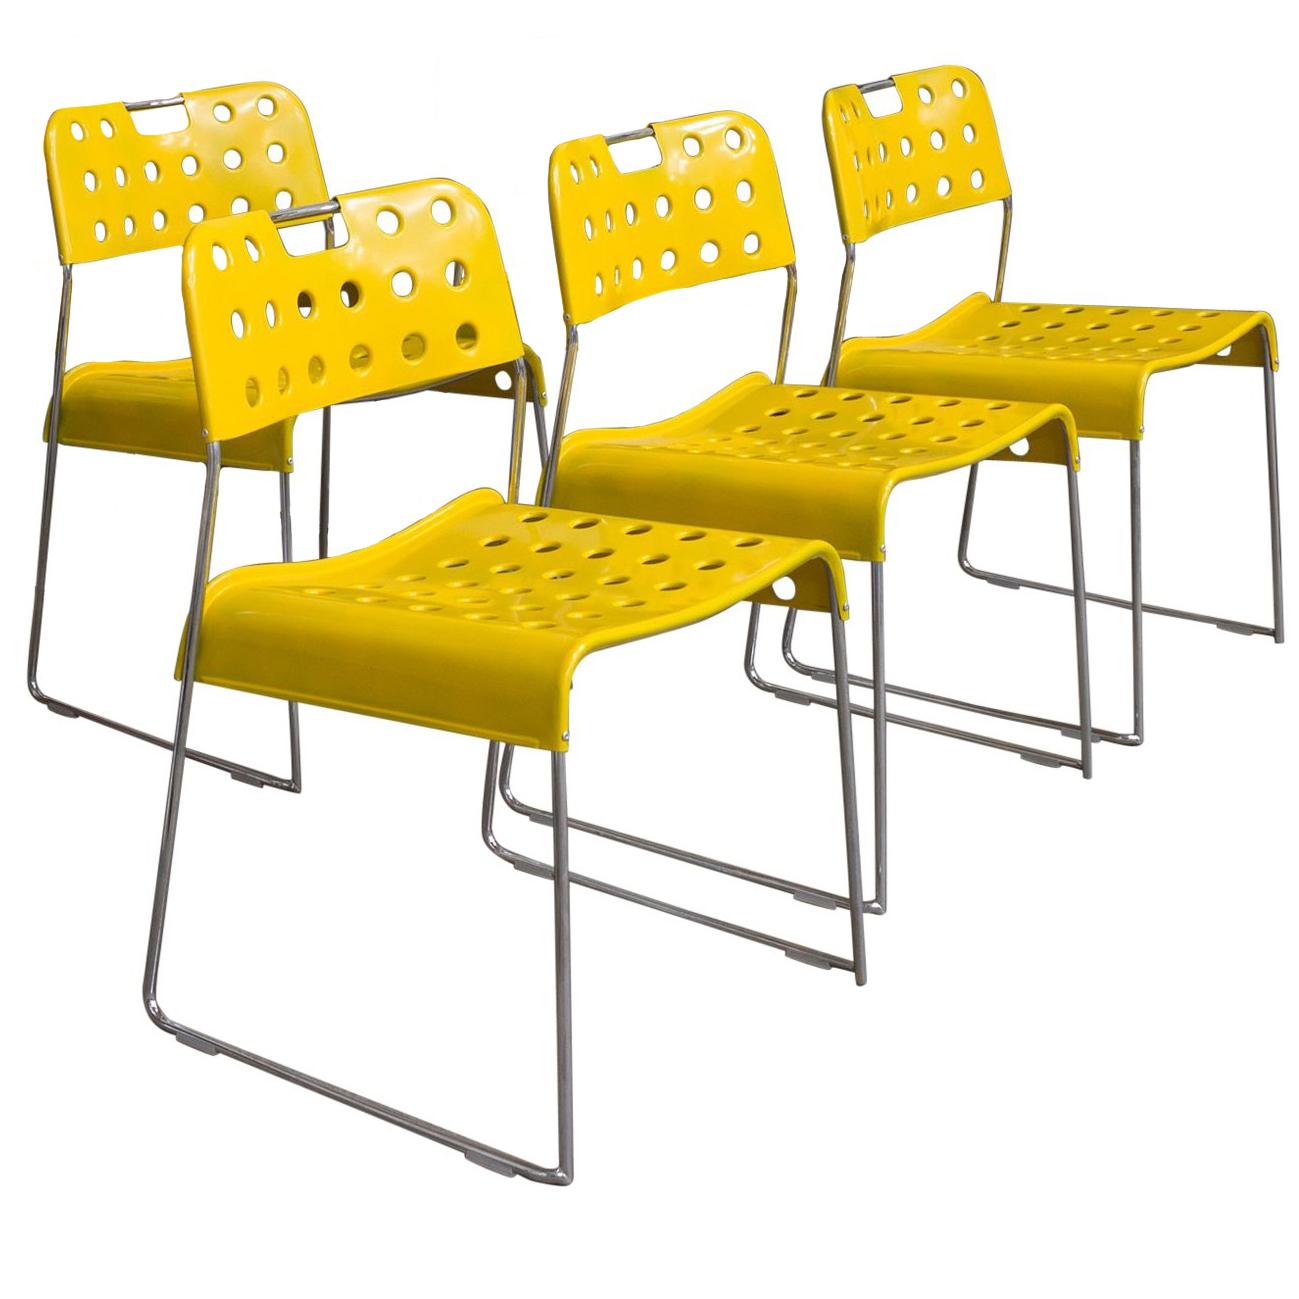 Rodney Kinsman, ensemble de rares chaises empilables jaune Omstak, 1971